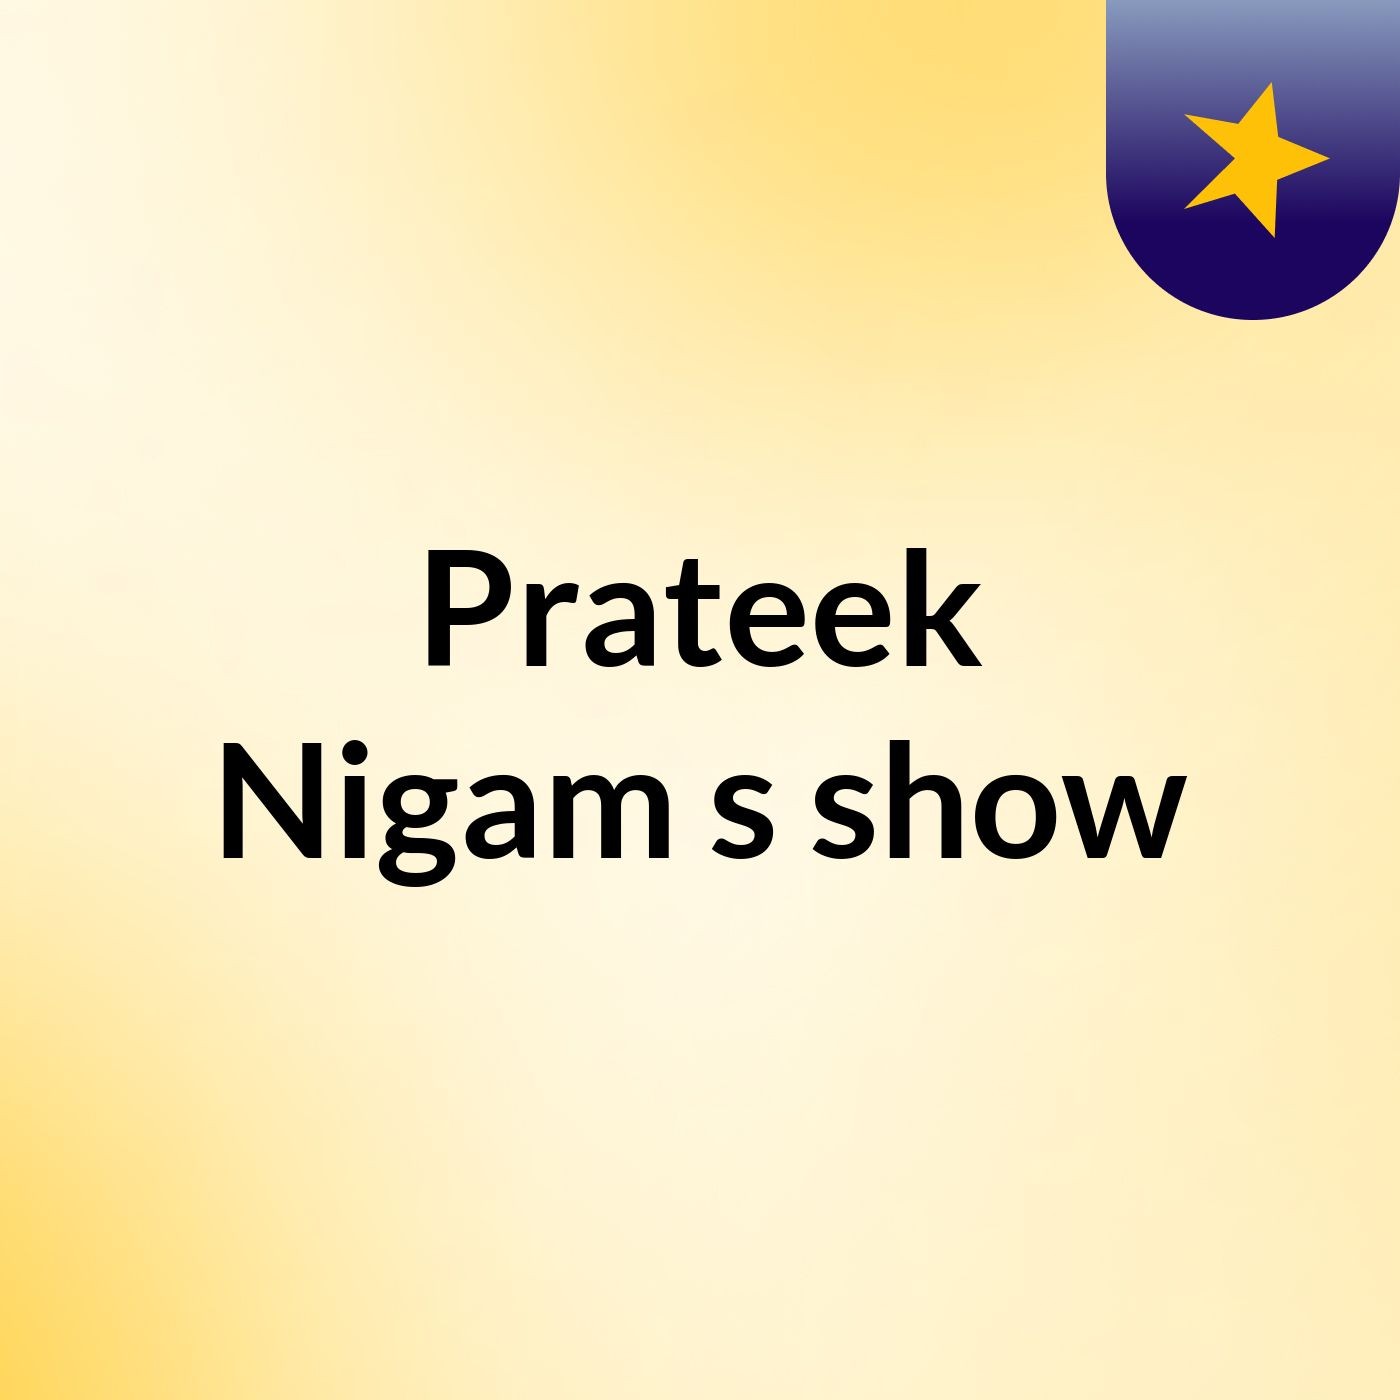 Prateek Nigam's show